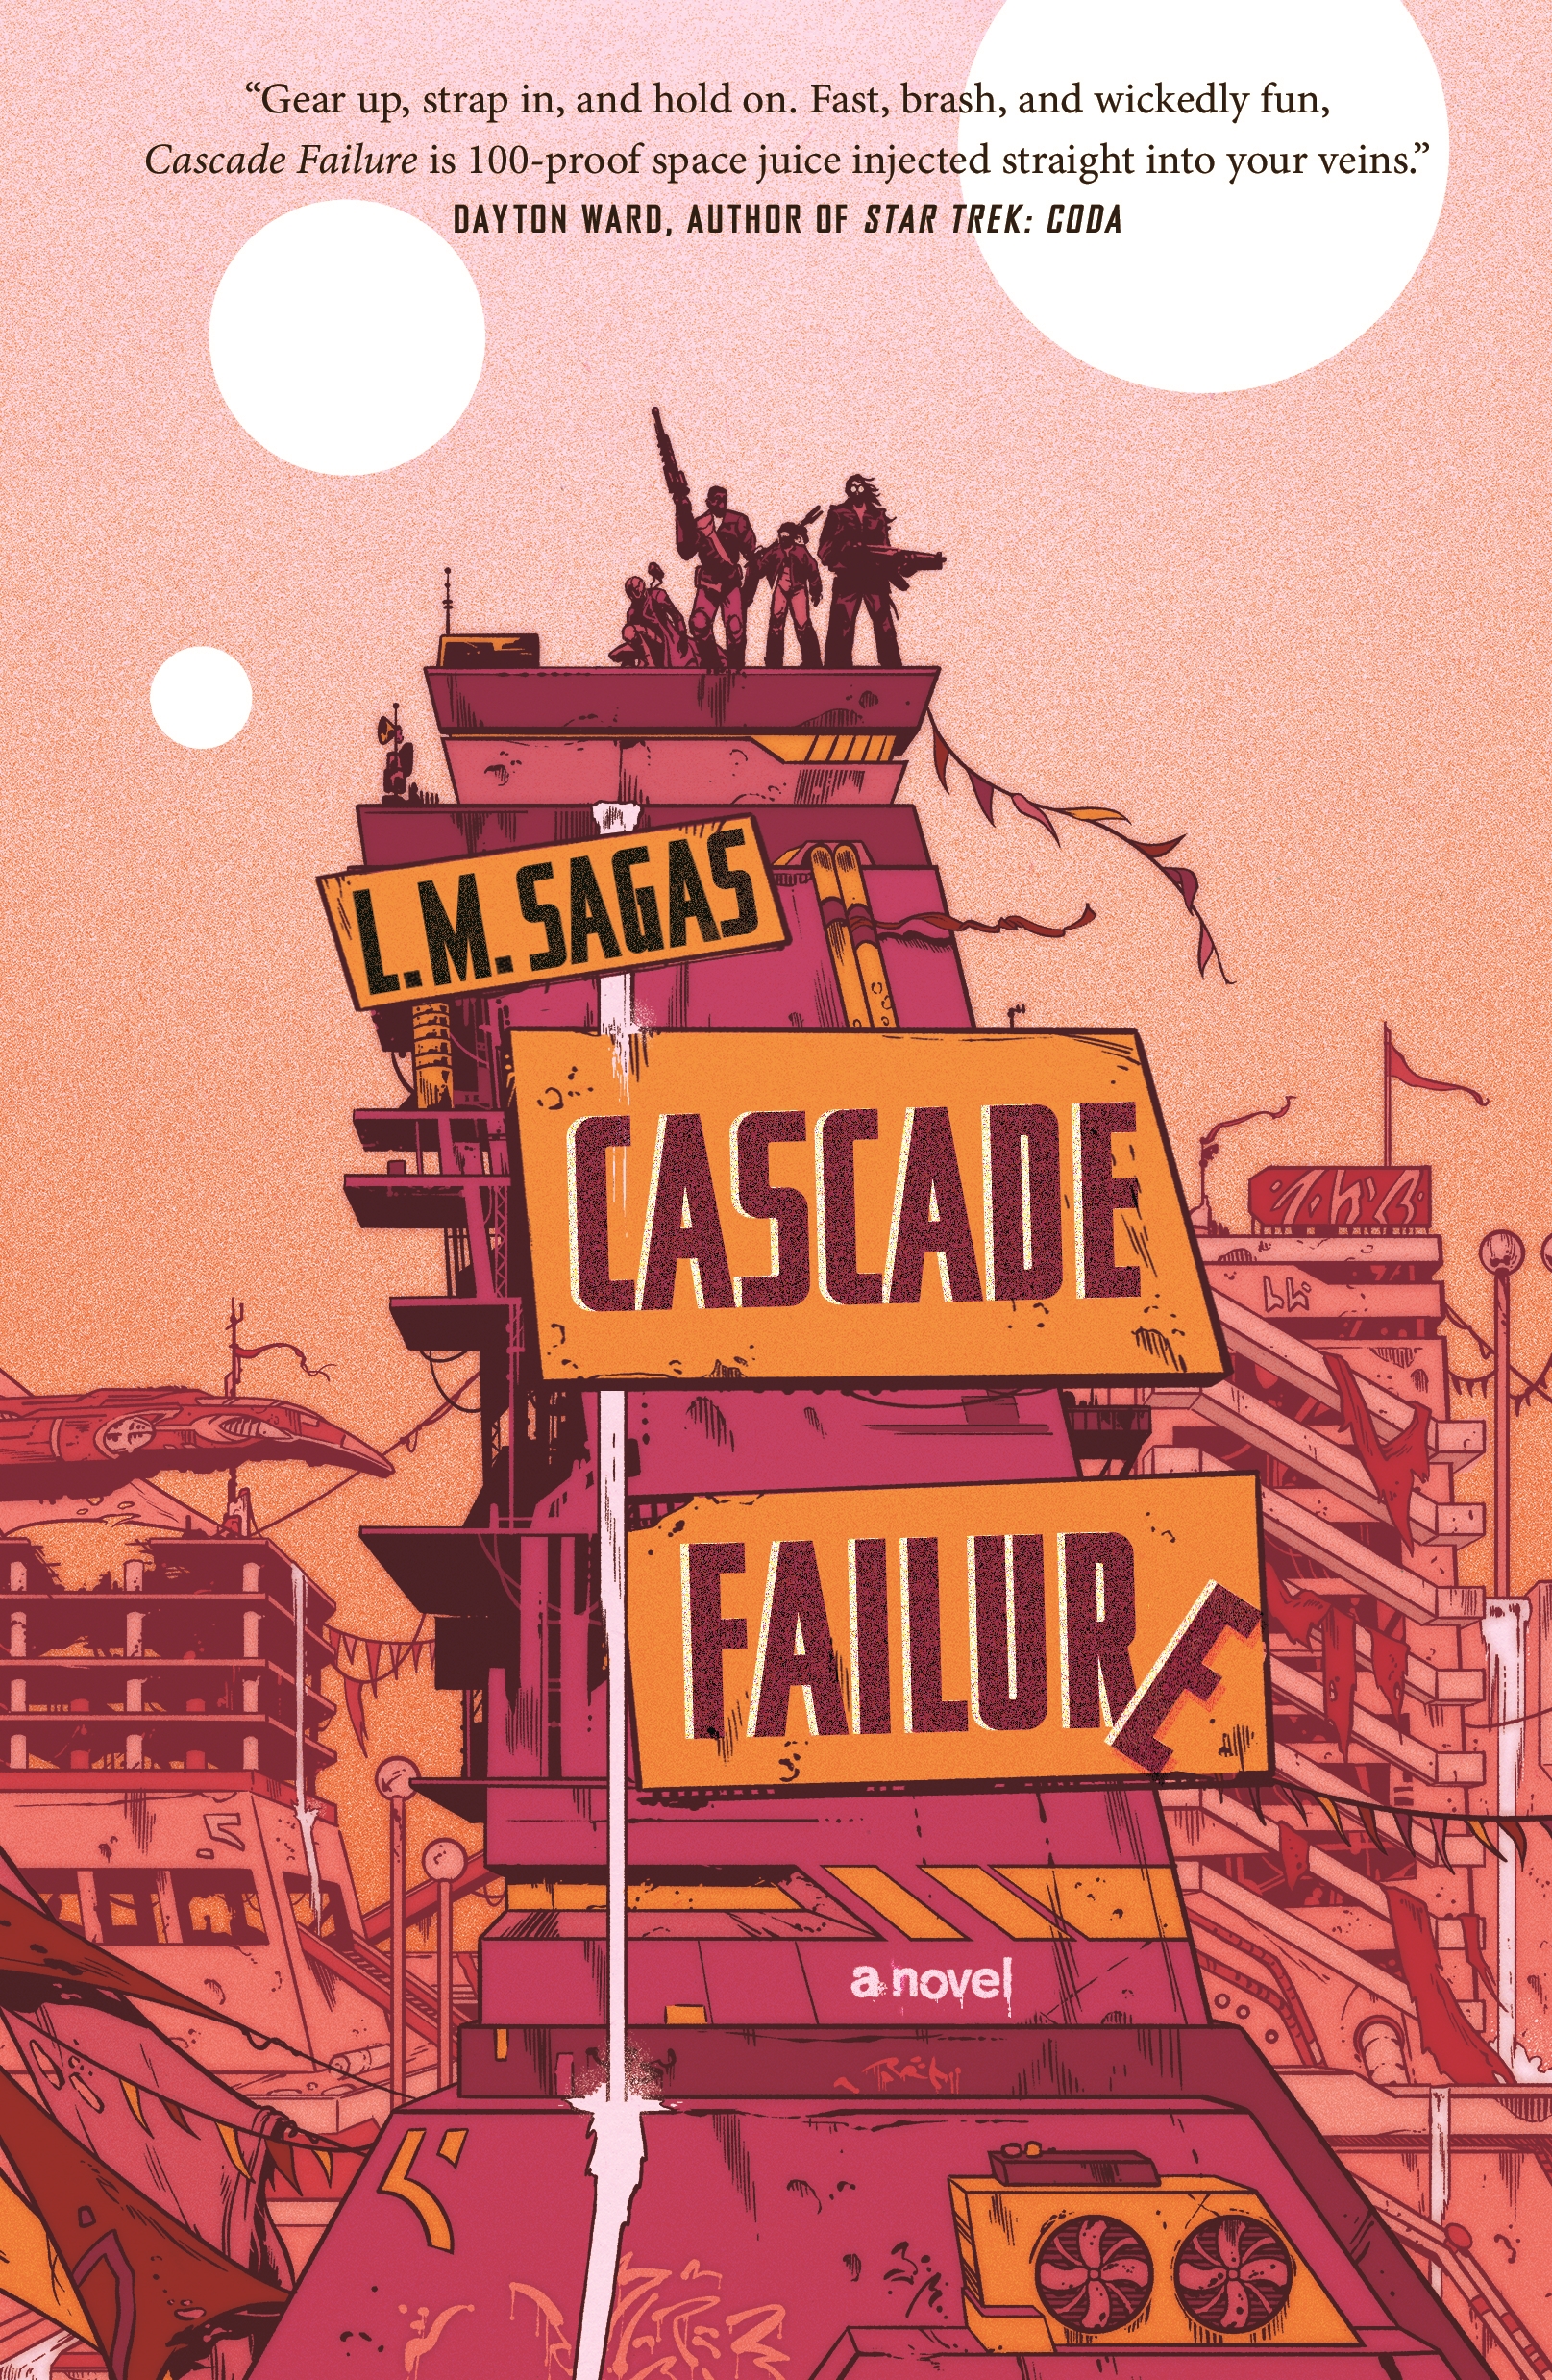 Cascade Failure : A Novel by L. M. Sagas